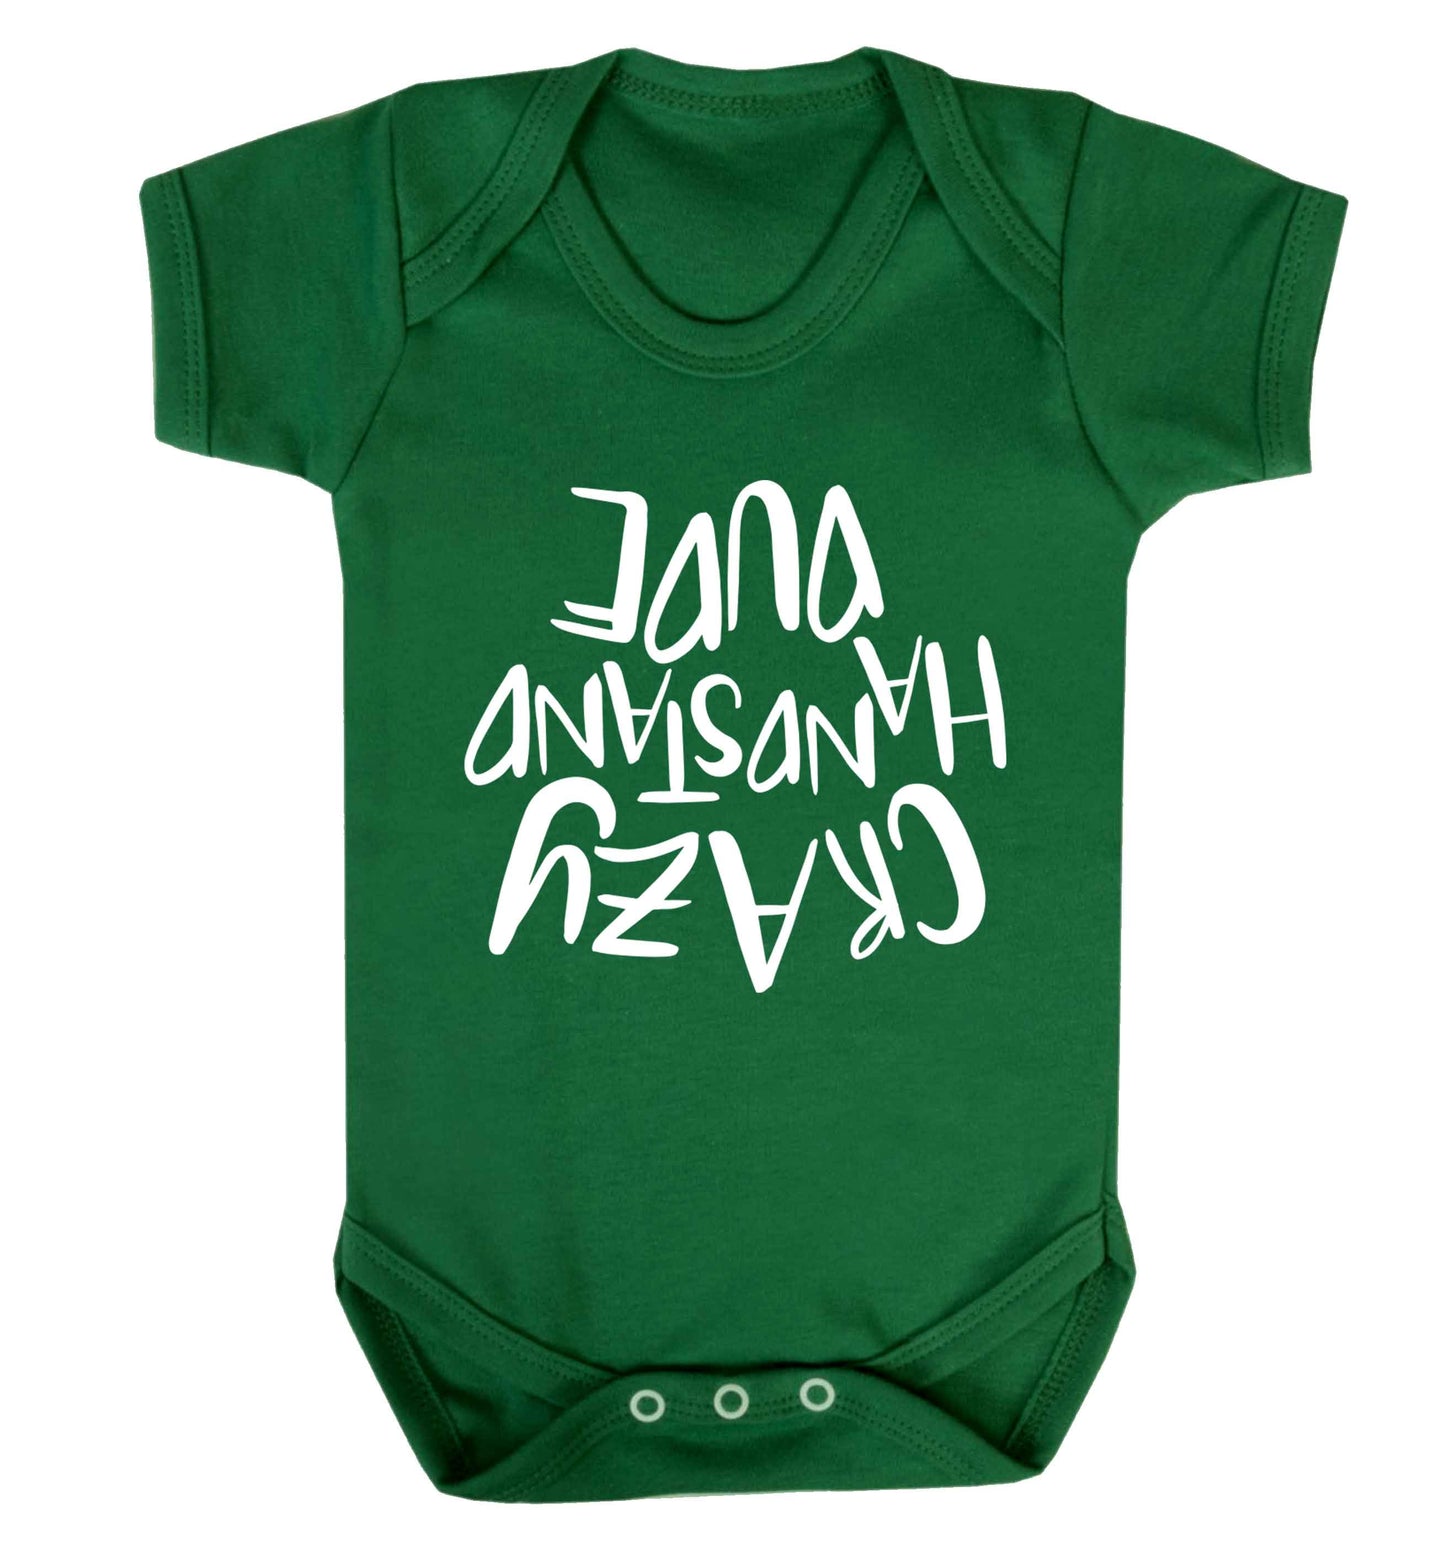 Crazy handstand dude Baby Vest green 18-24 months